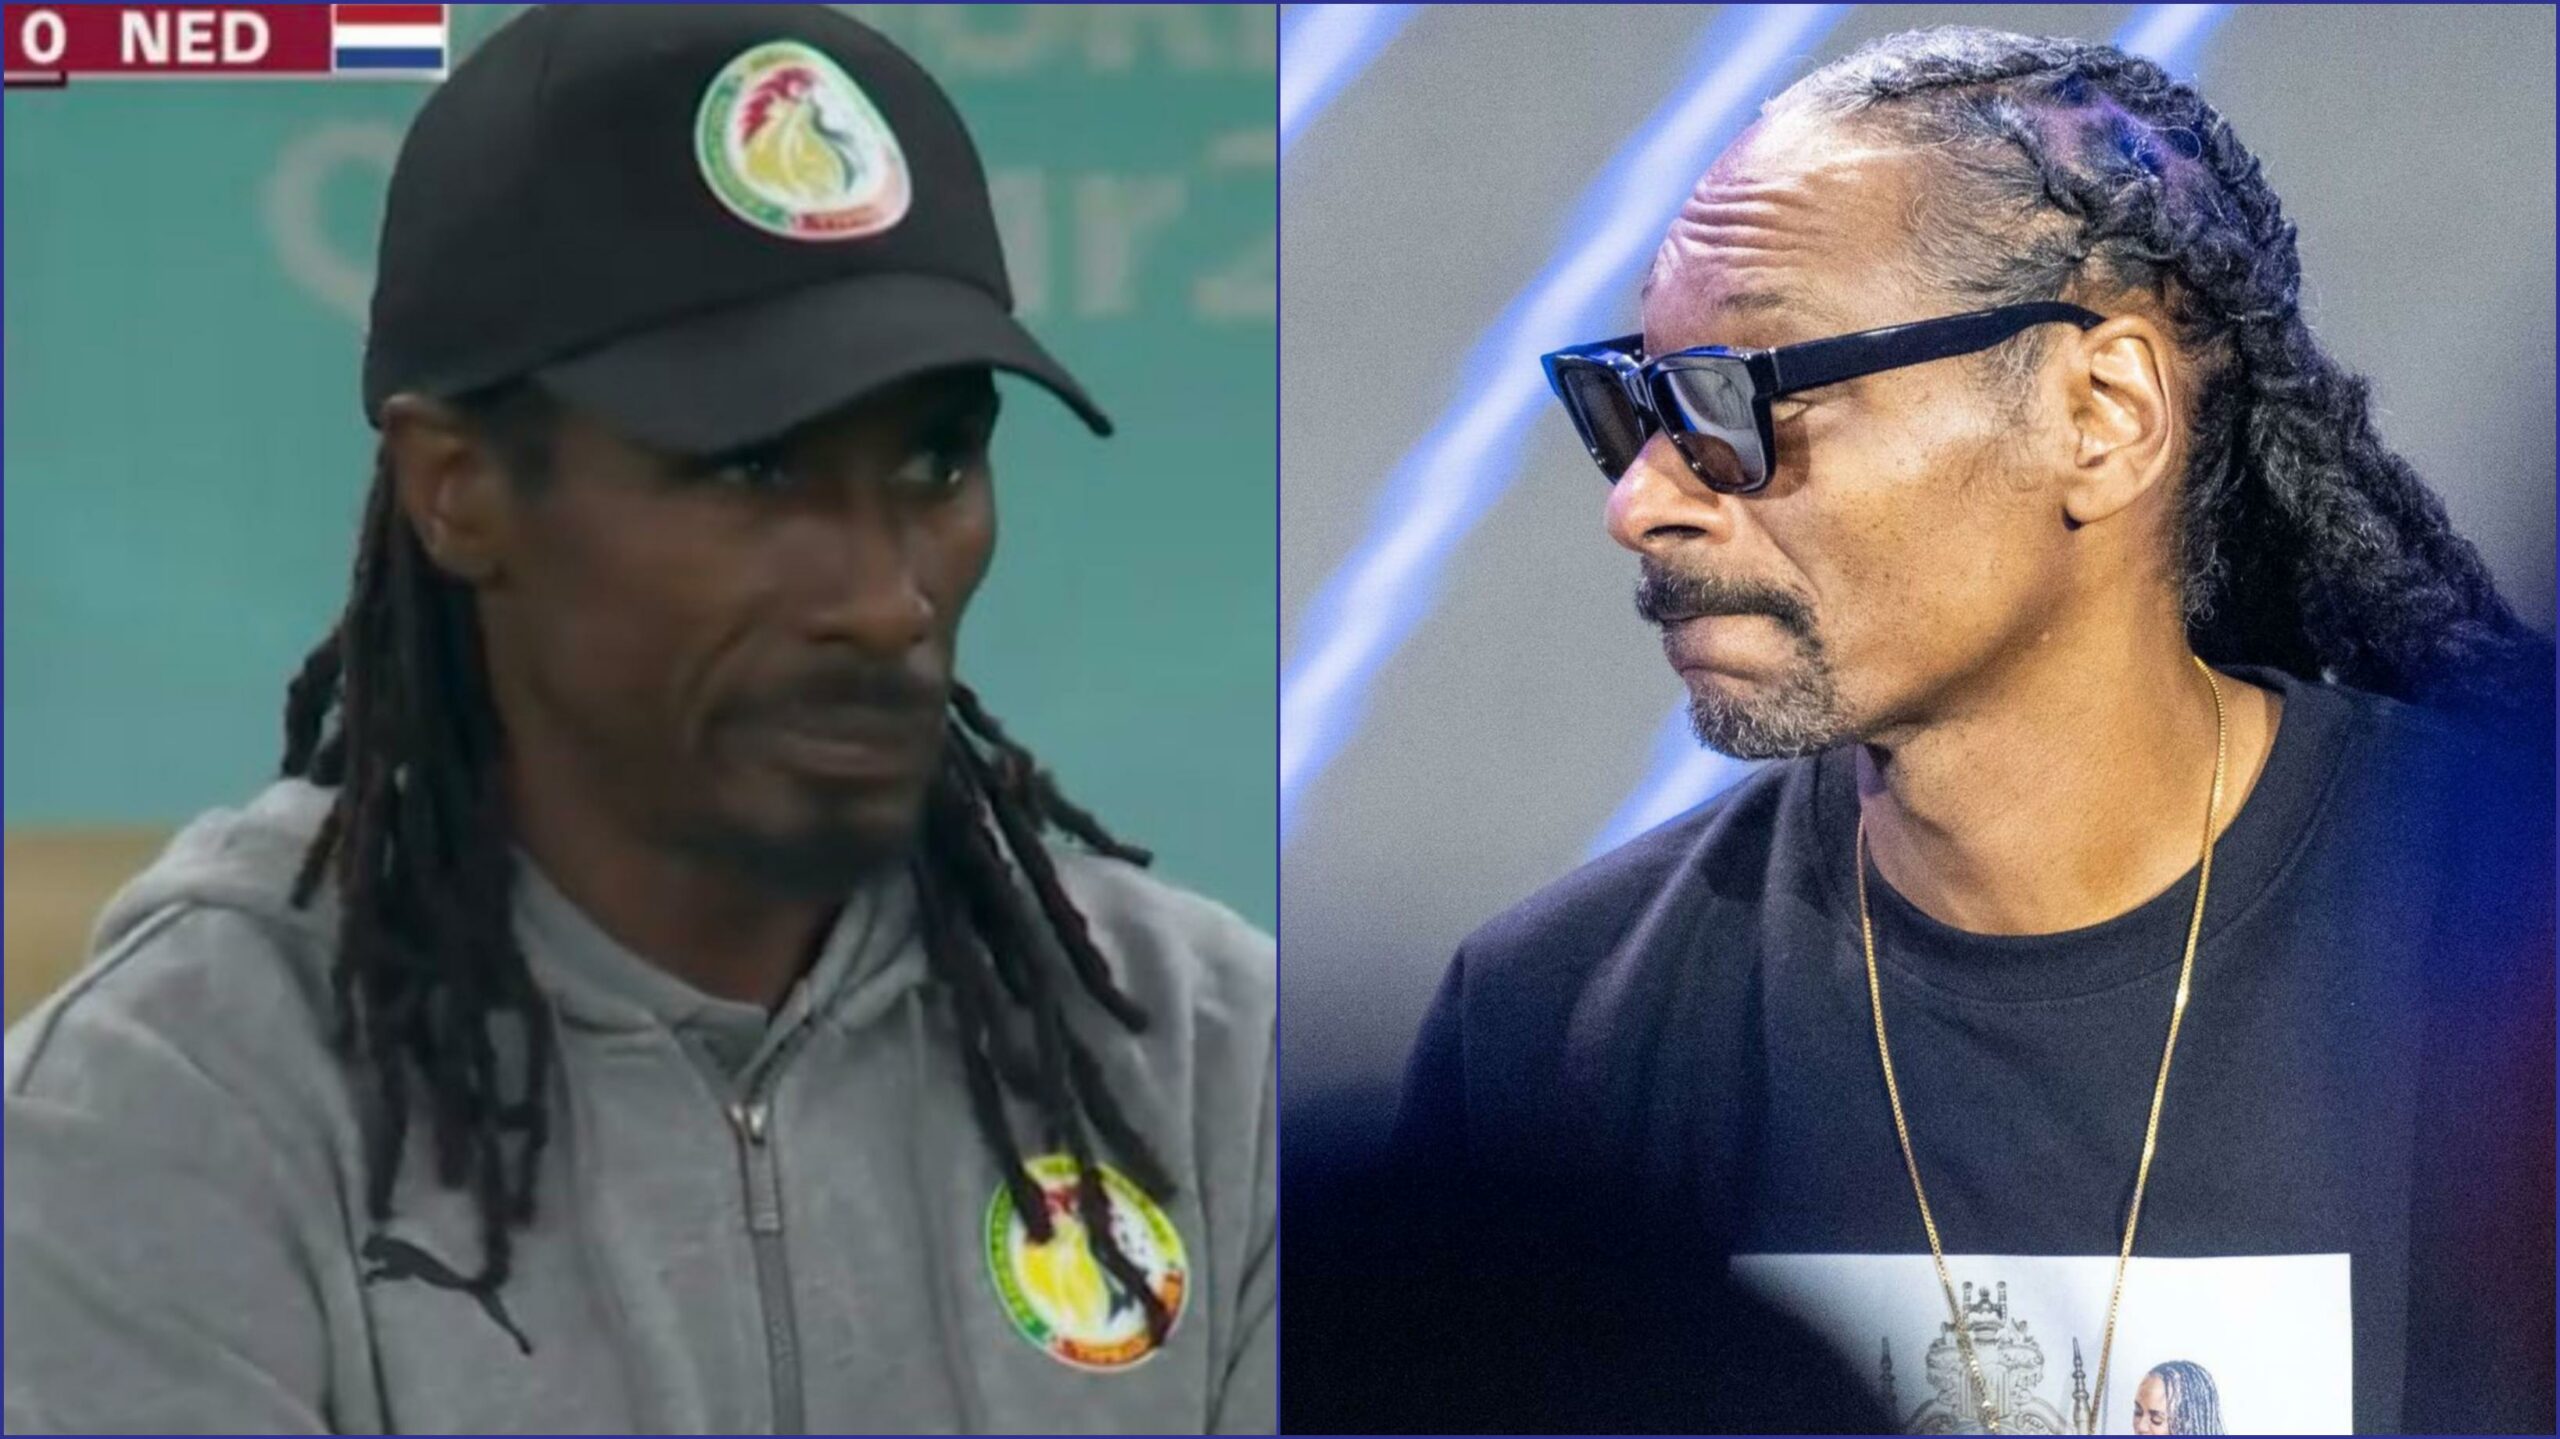 «Aliou Cissé te ressemble», le rappeur américain Snoop Dogg réagit, les fans s’enflamment